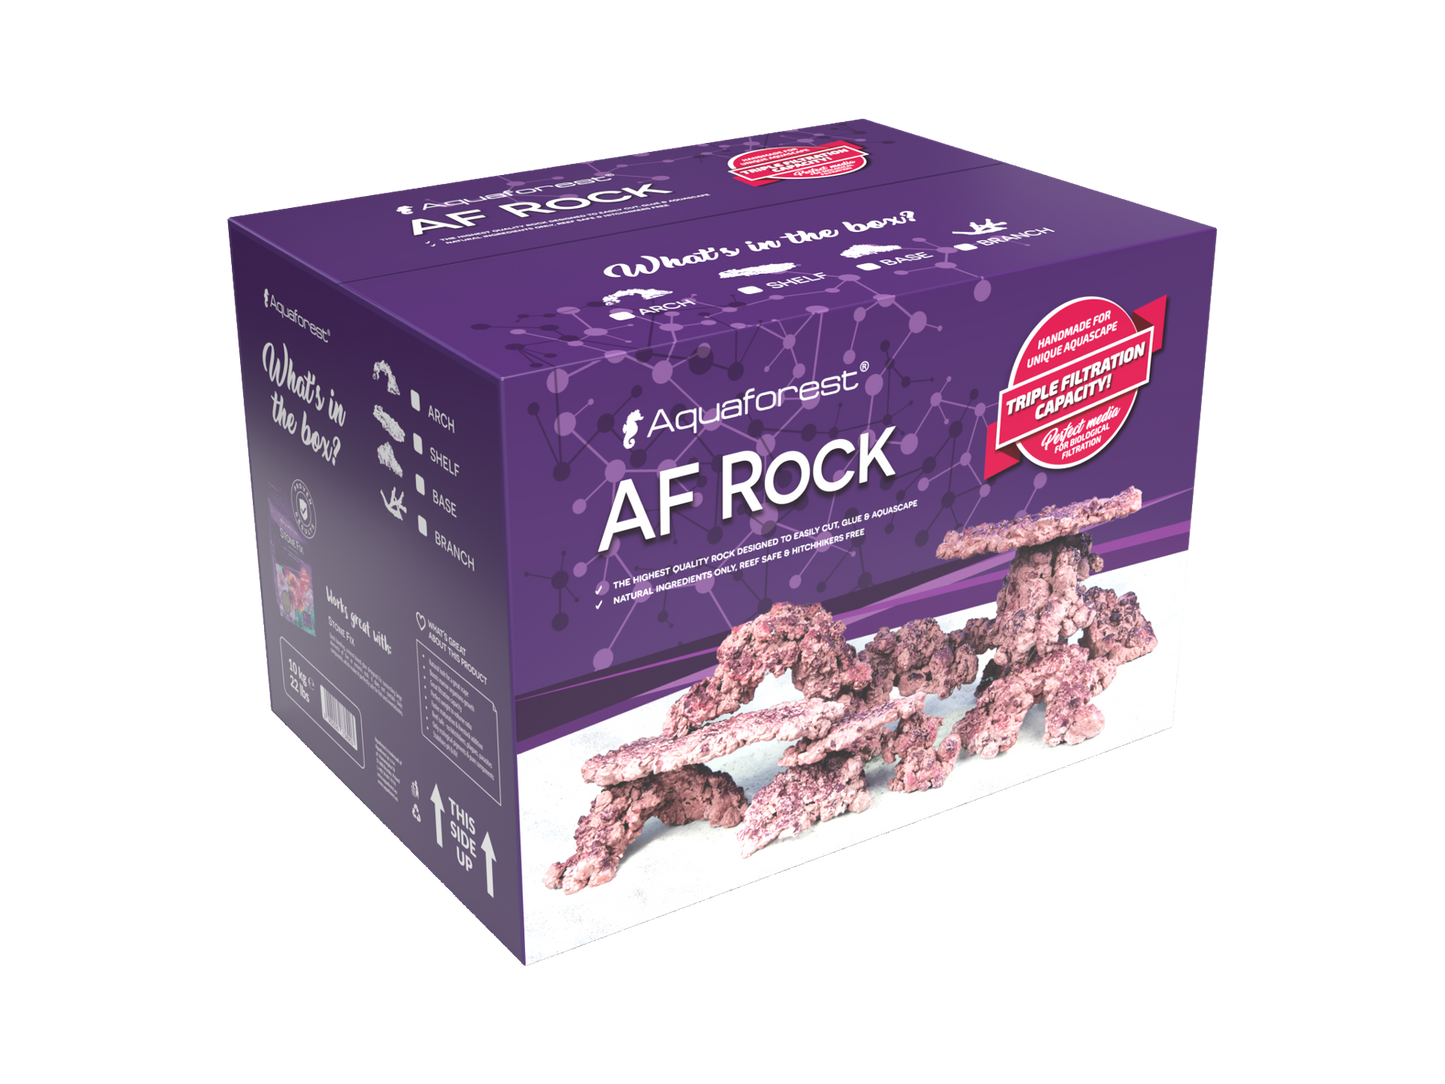 Aquaforest Rock MIX 10 eller 18 kg. - high porosity rock, box (Obs! Fragt på sten inkl. i prisen og leveres separat for andre produkter)